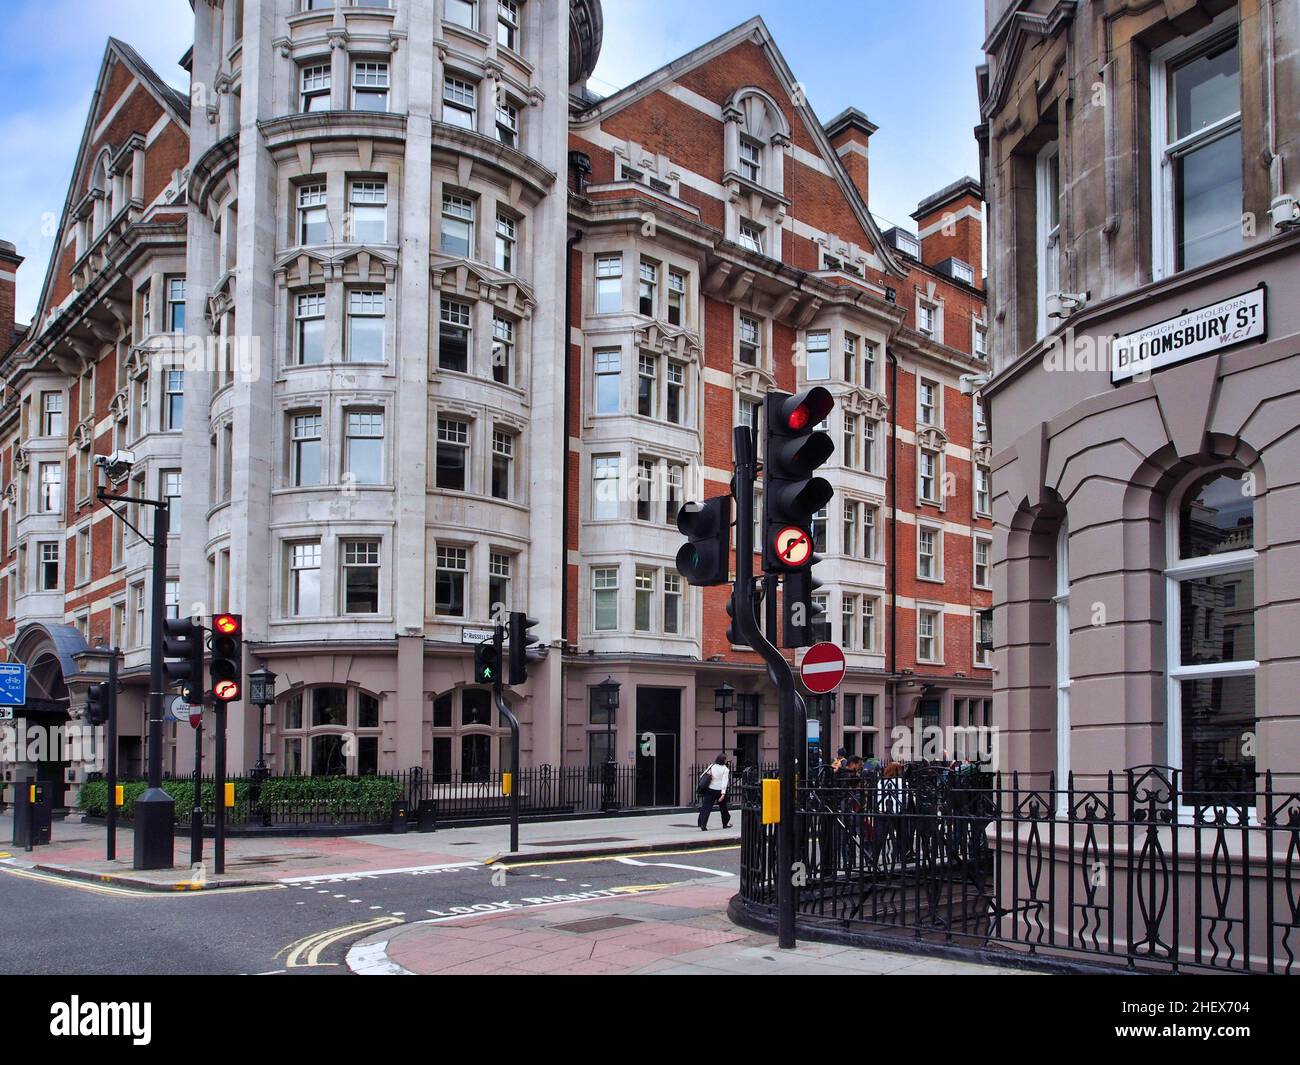 Antiguos edificios de apartamentos típicos en el distrito de Bloomsbury de Londres, Inglaterra Foto de stock